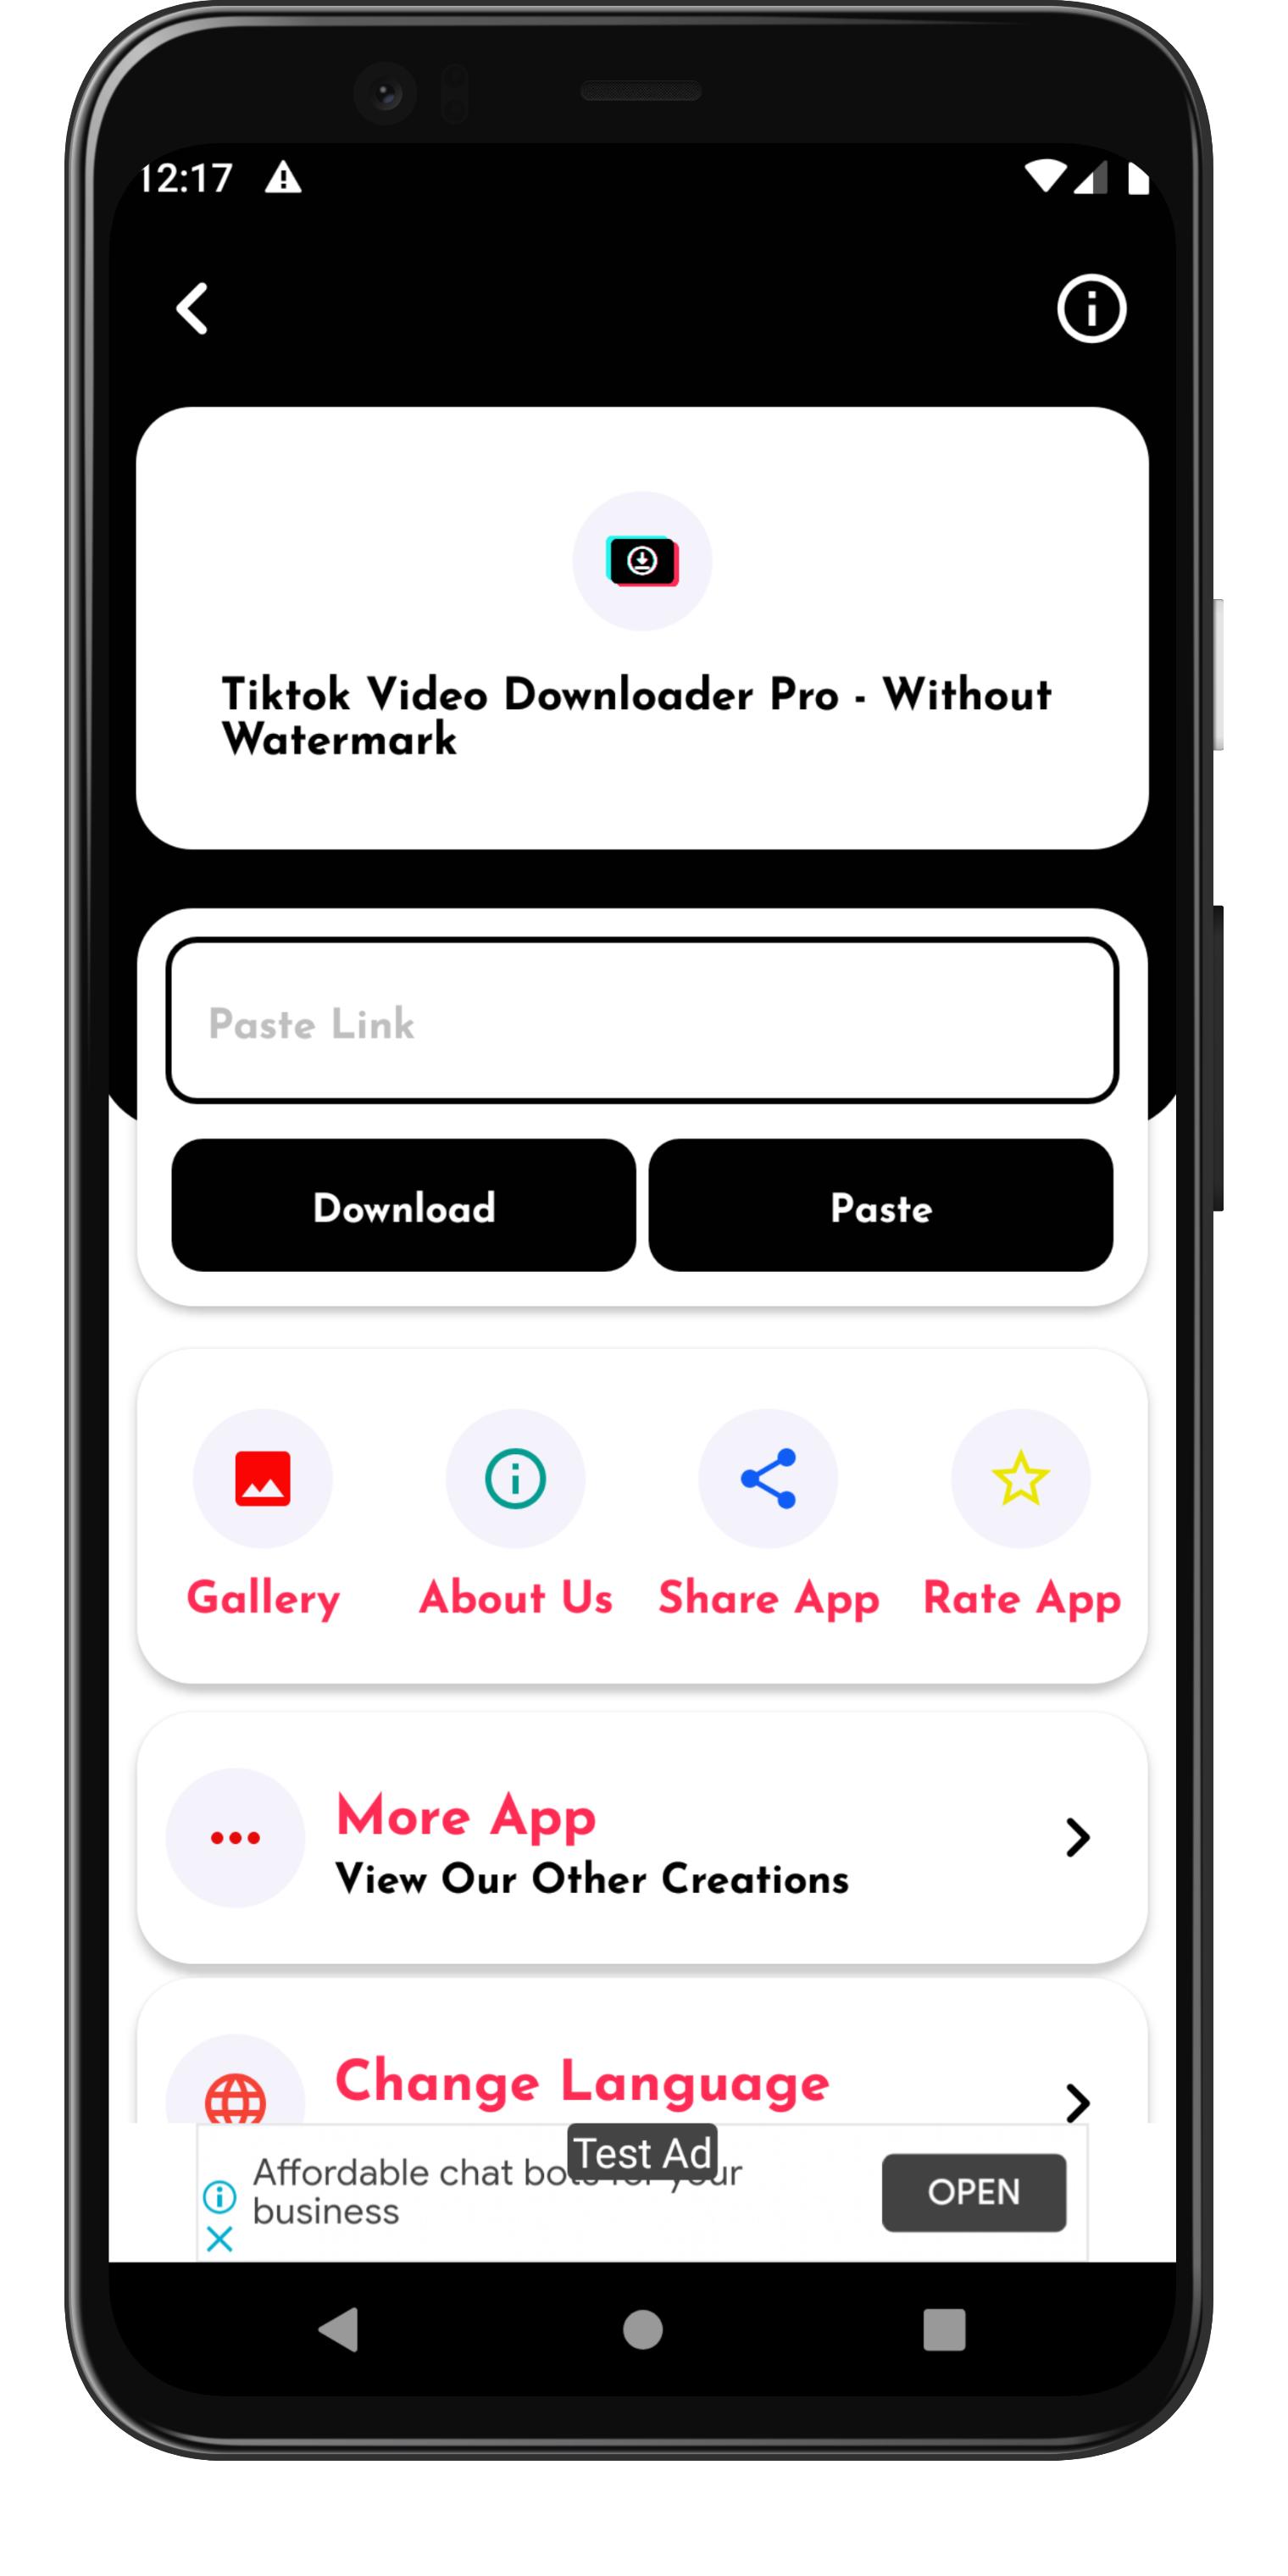 TikTok Video Downloader Pro - Without Watermark APK für Android ...